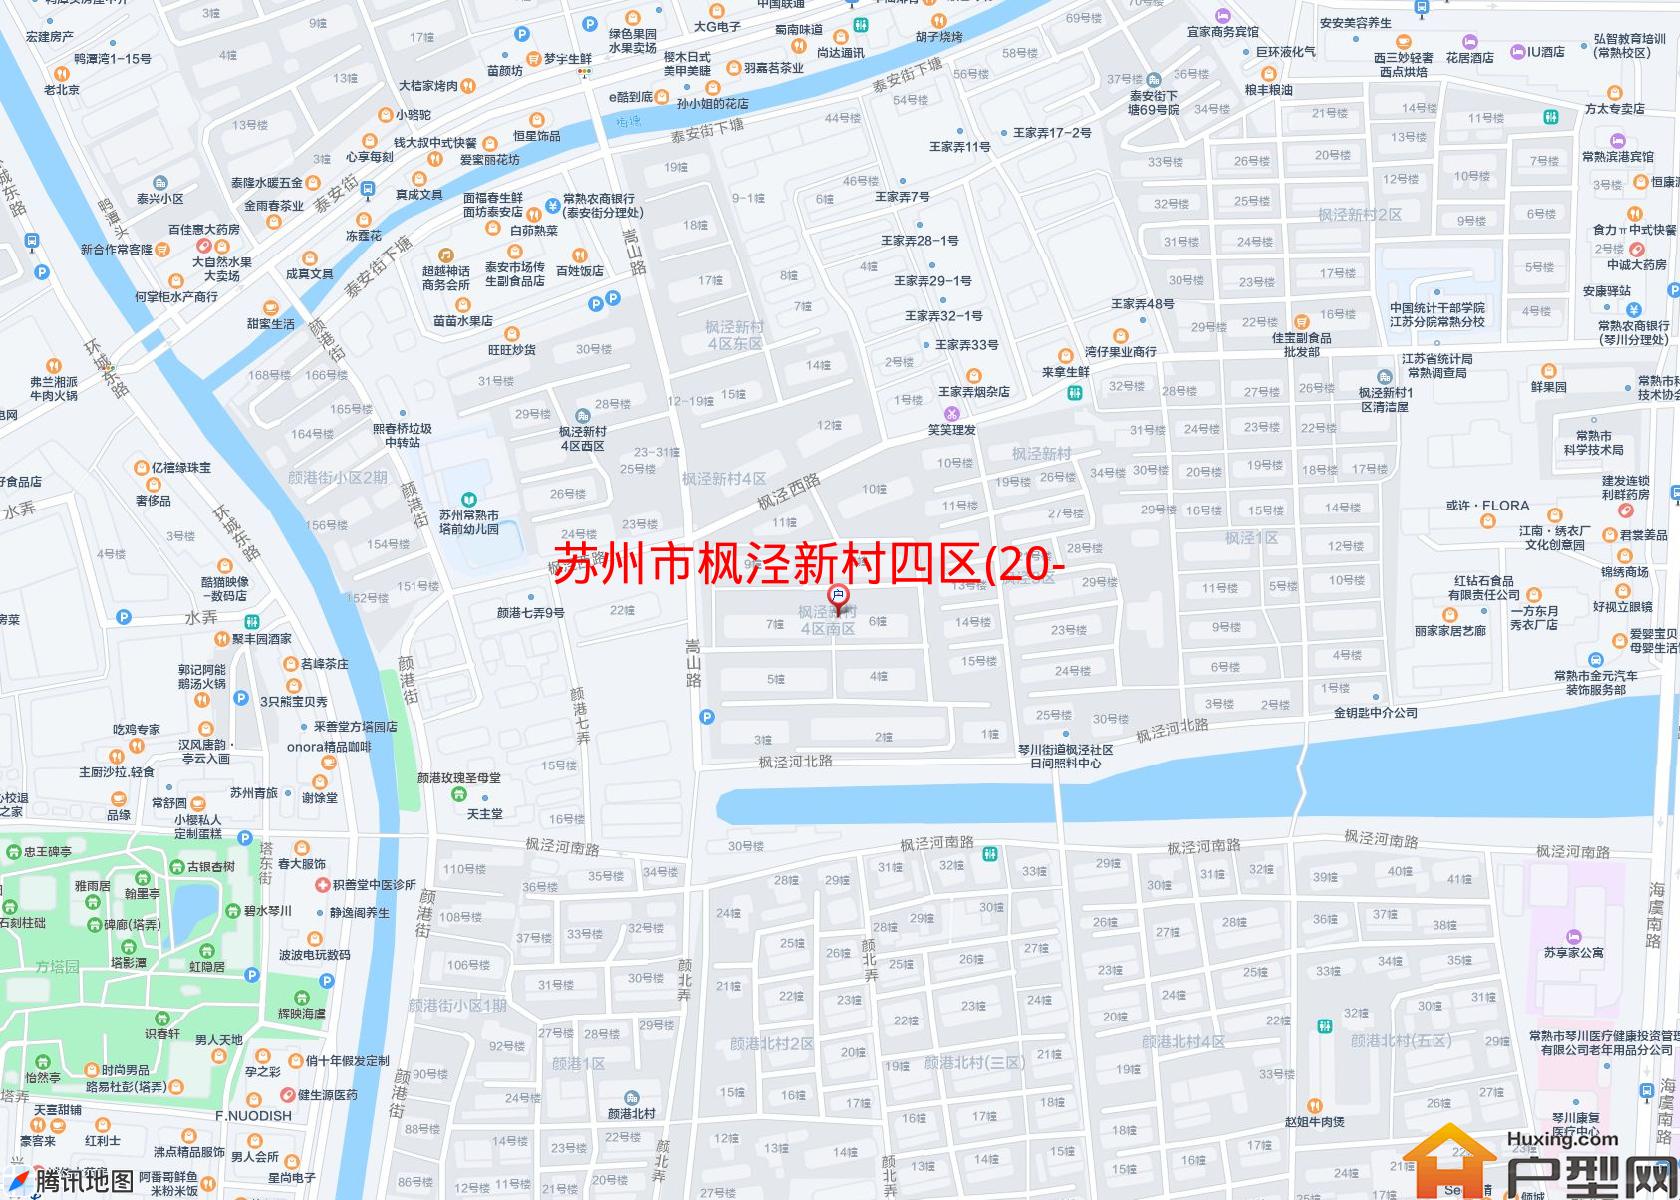 枫泾新村四区(20-22)小区 - 户型网